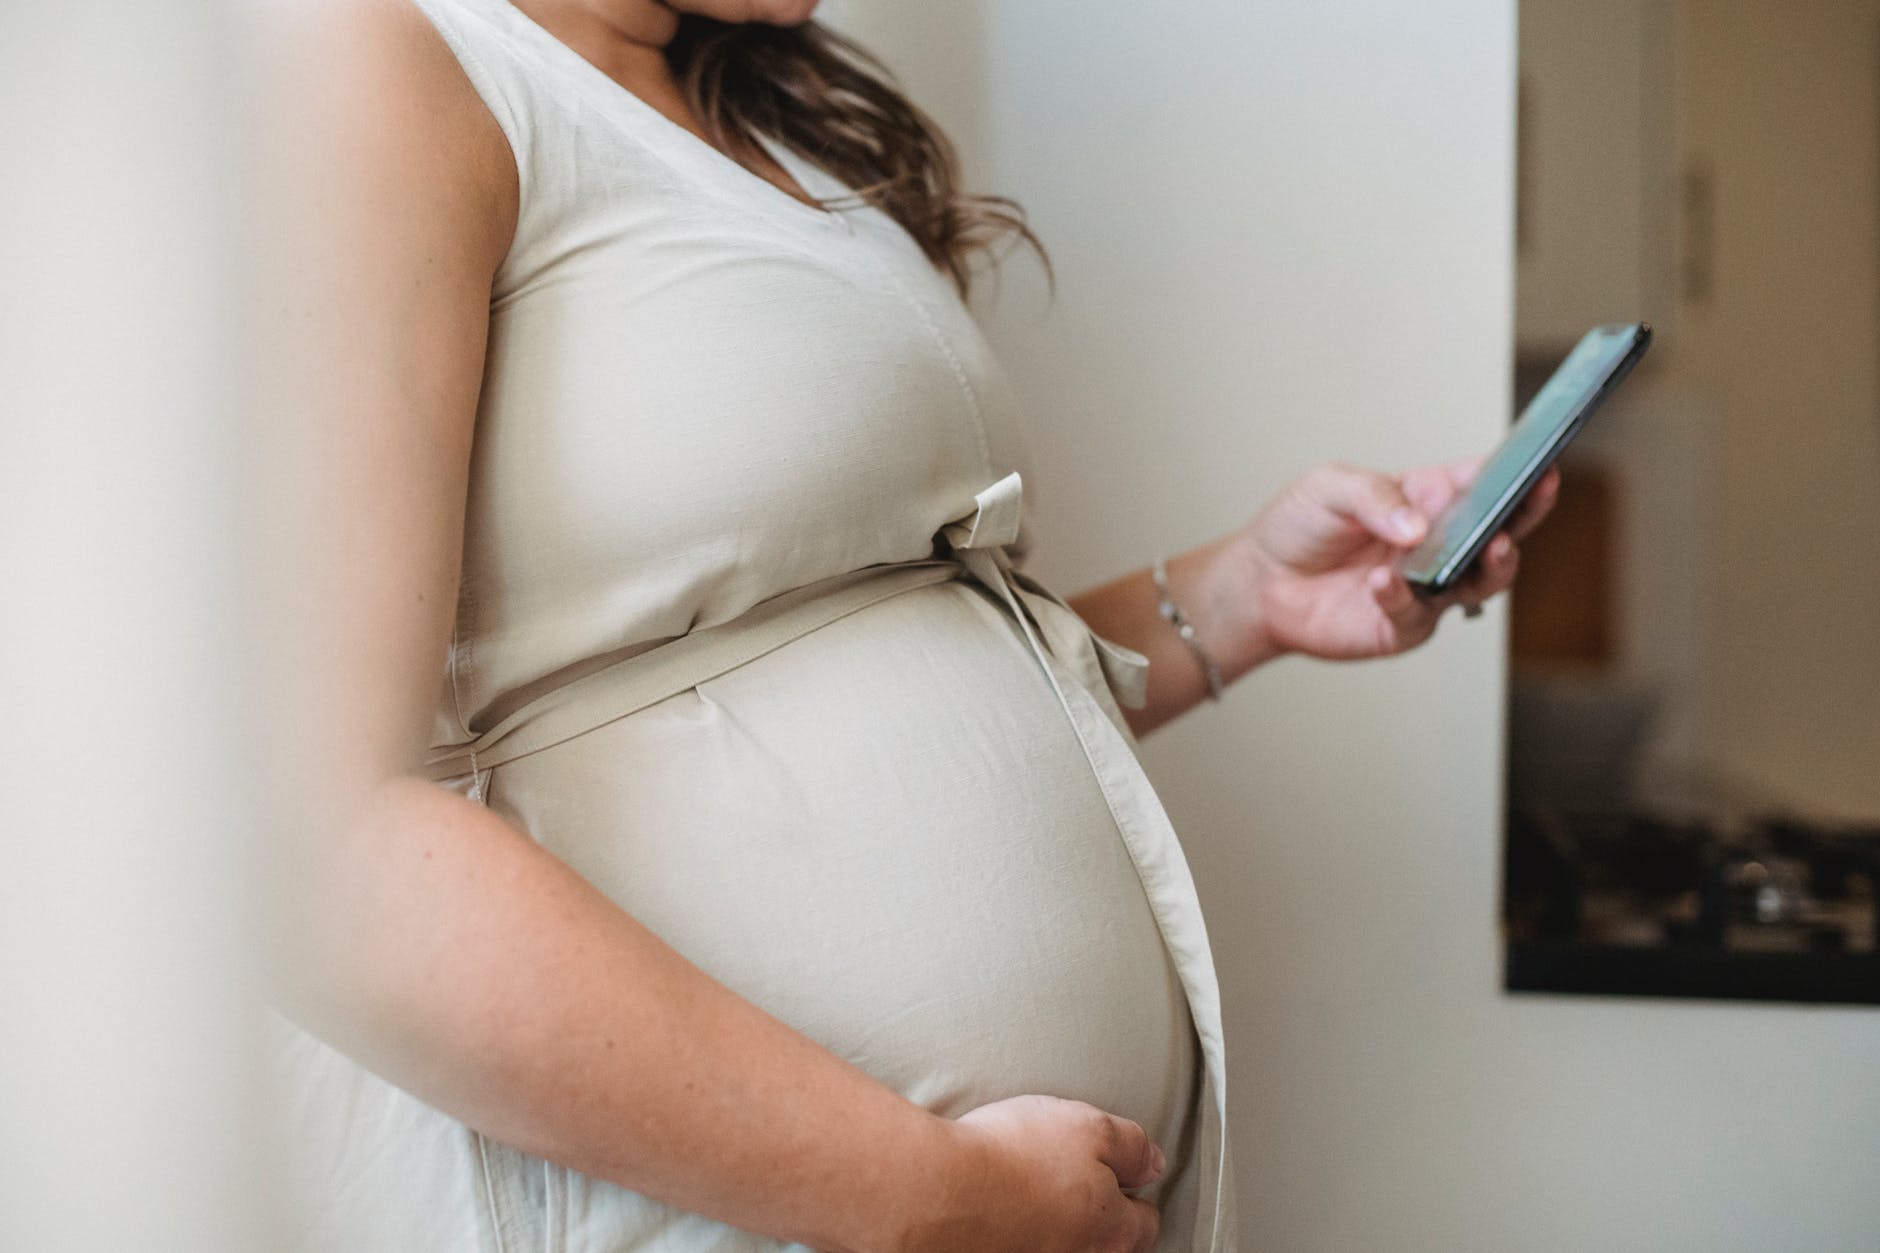 Mujer luciendo su avanzado estado de embarazo. | Foto: Pexels